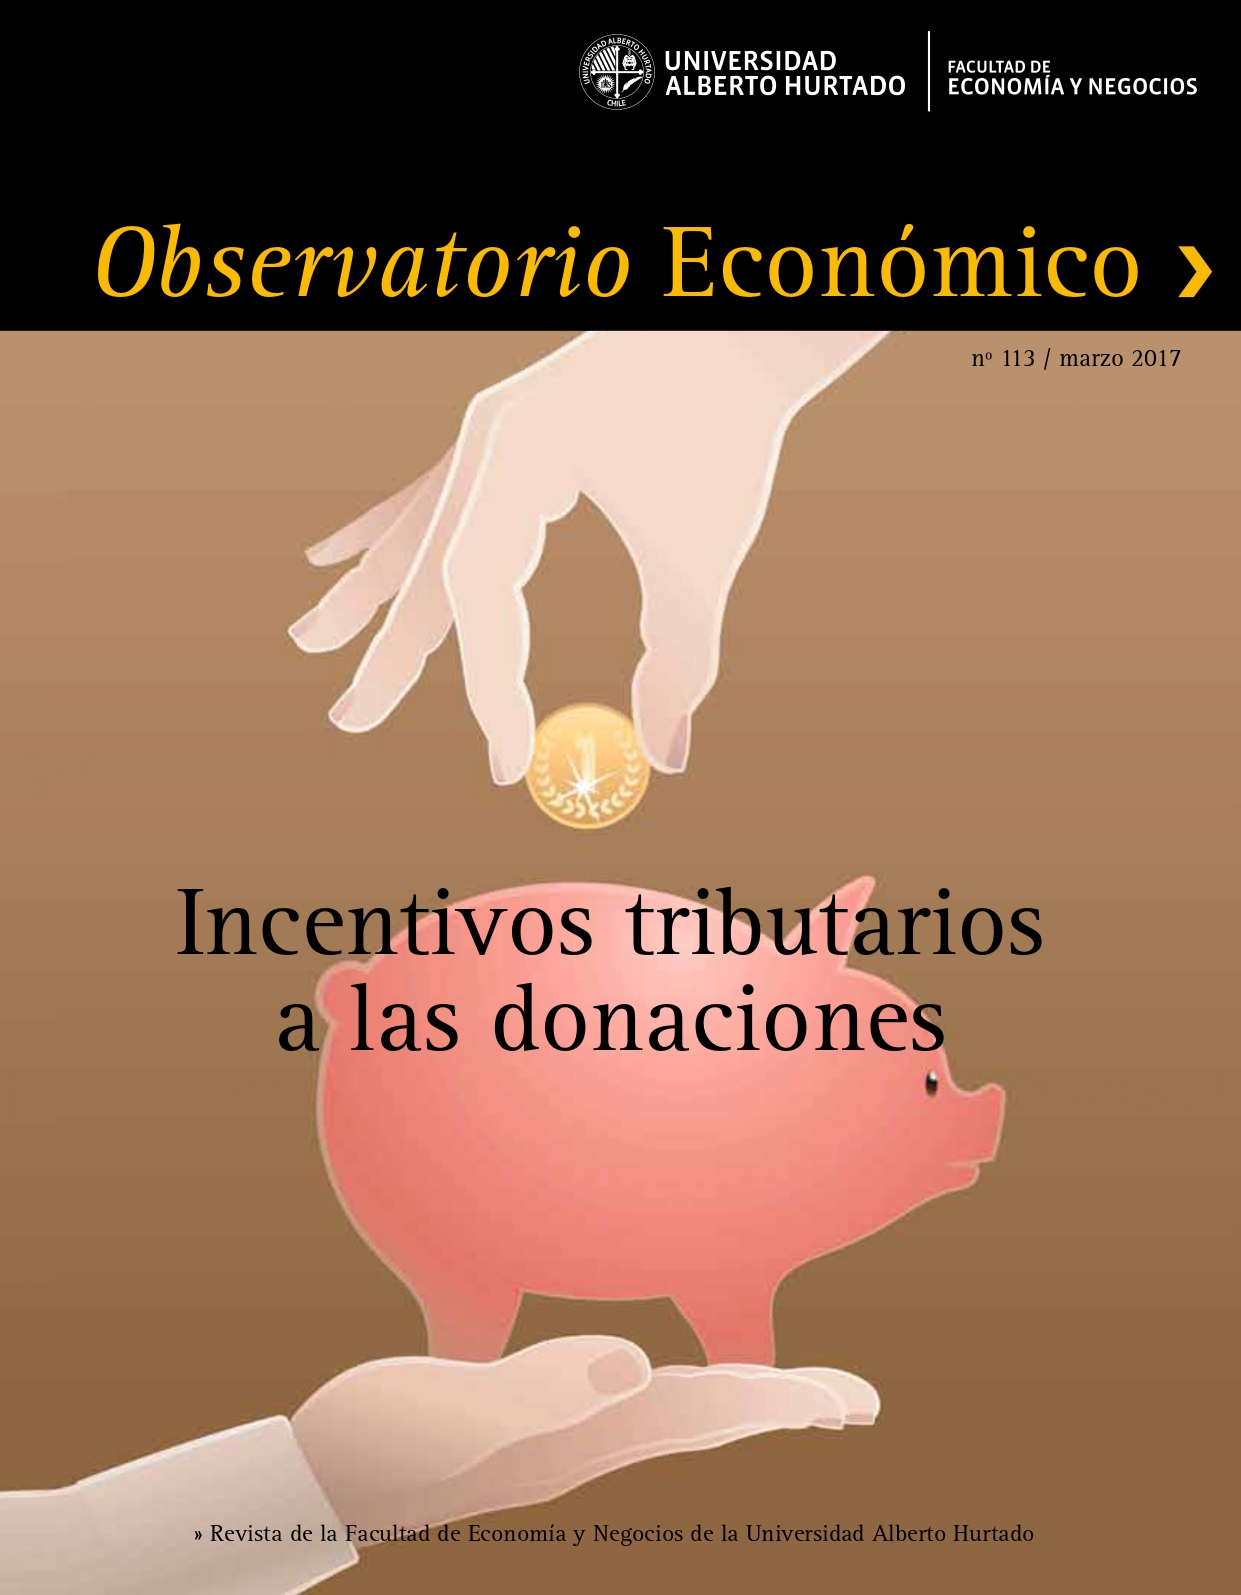 TÃ­tulo del nÃºmero de la revista : "Incentivo tributarios a las donaciones"